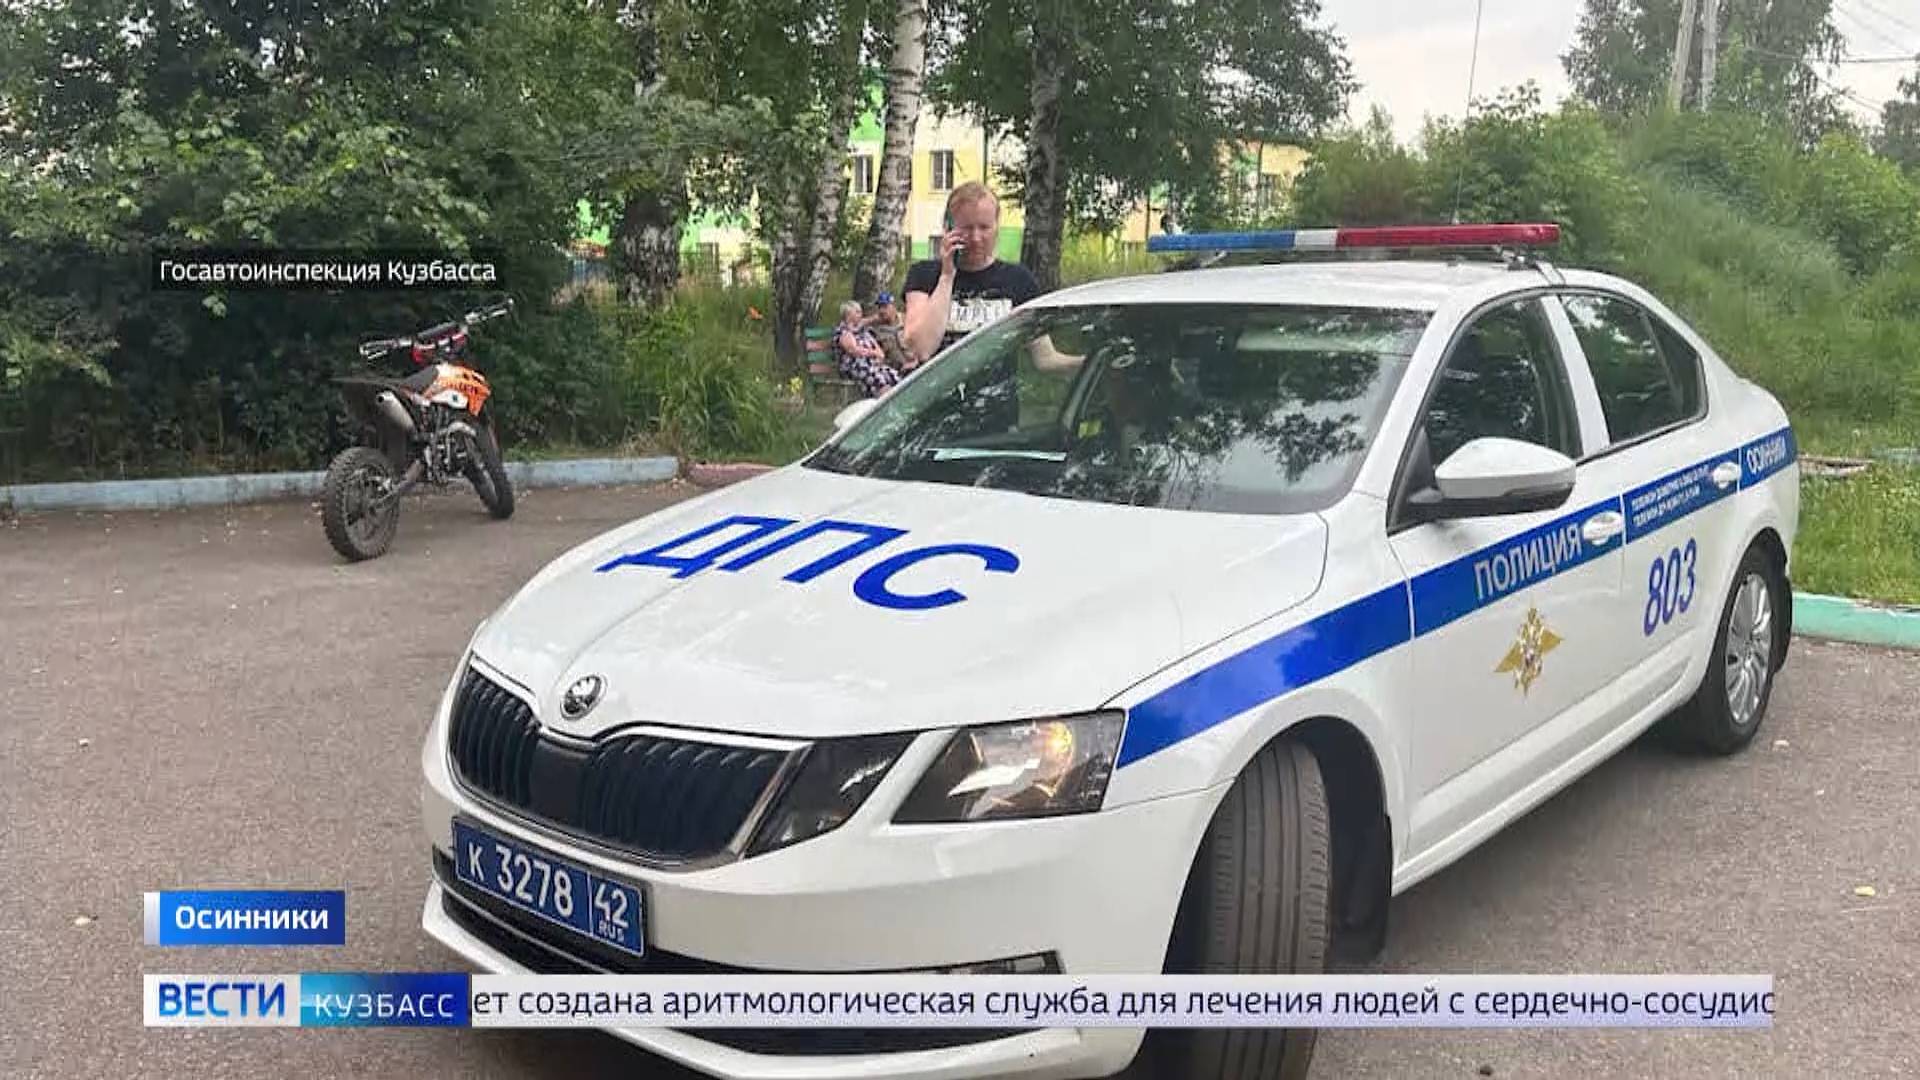 ДТП с мусоровозом и штраф в 30 тысяч за юного водителя: сводка происшествий по Кузбассу